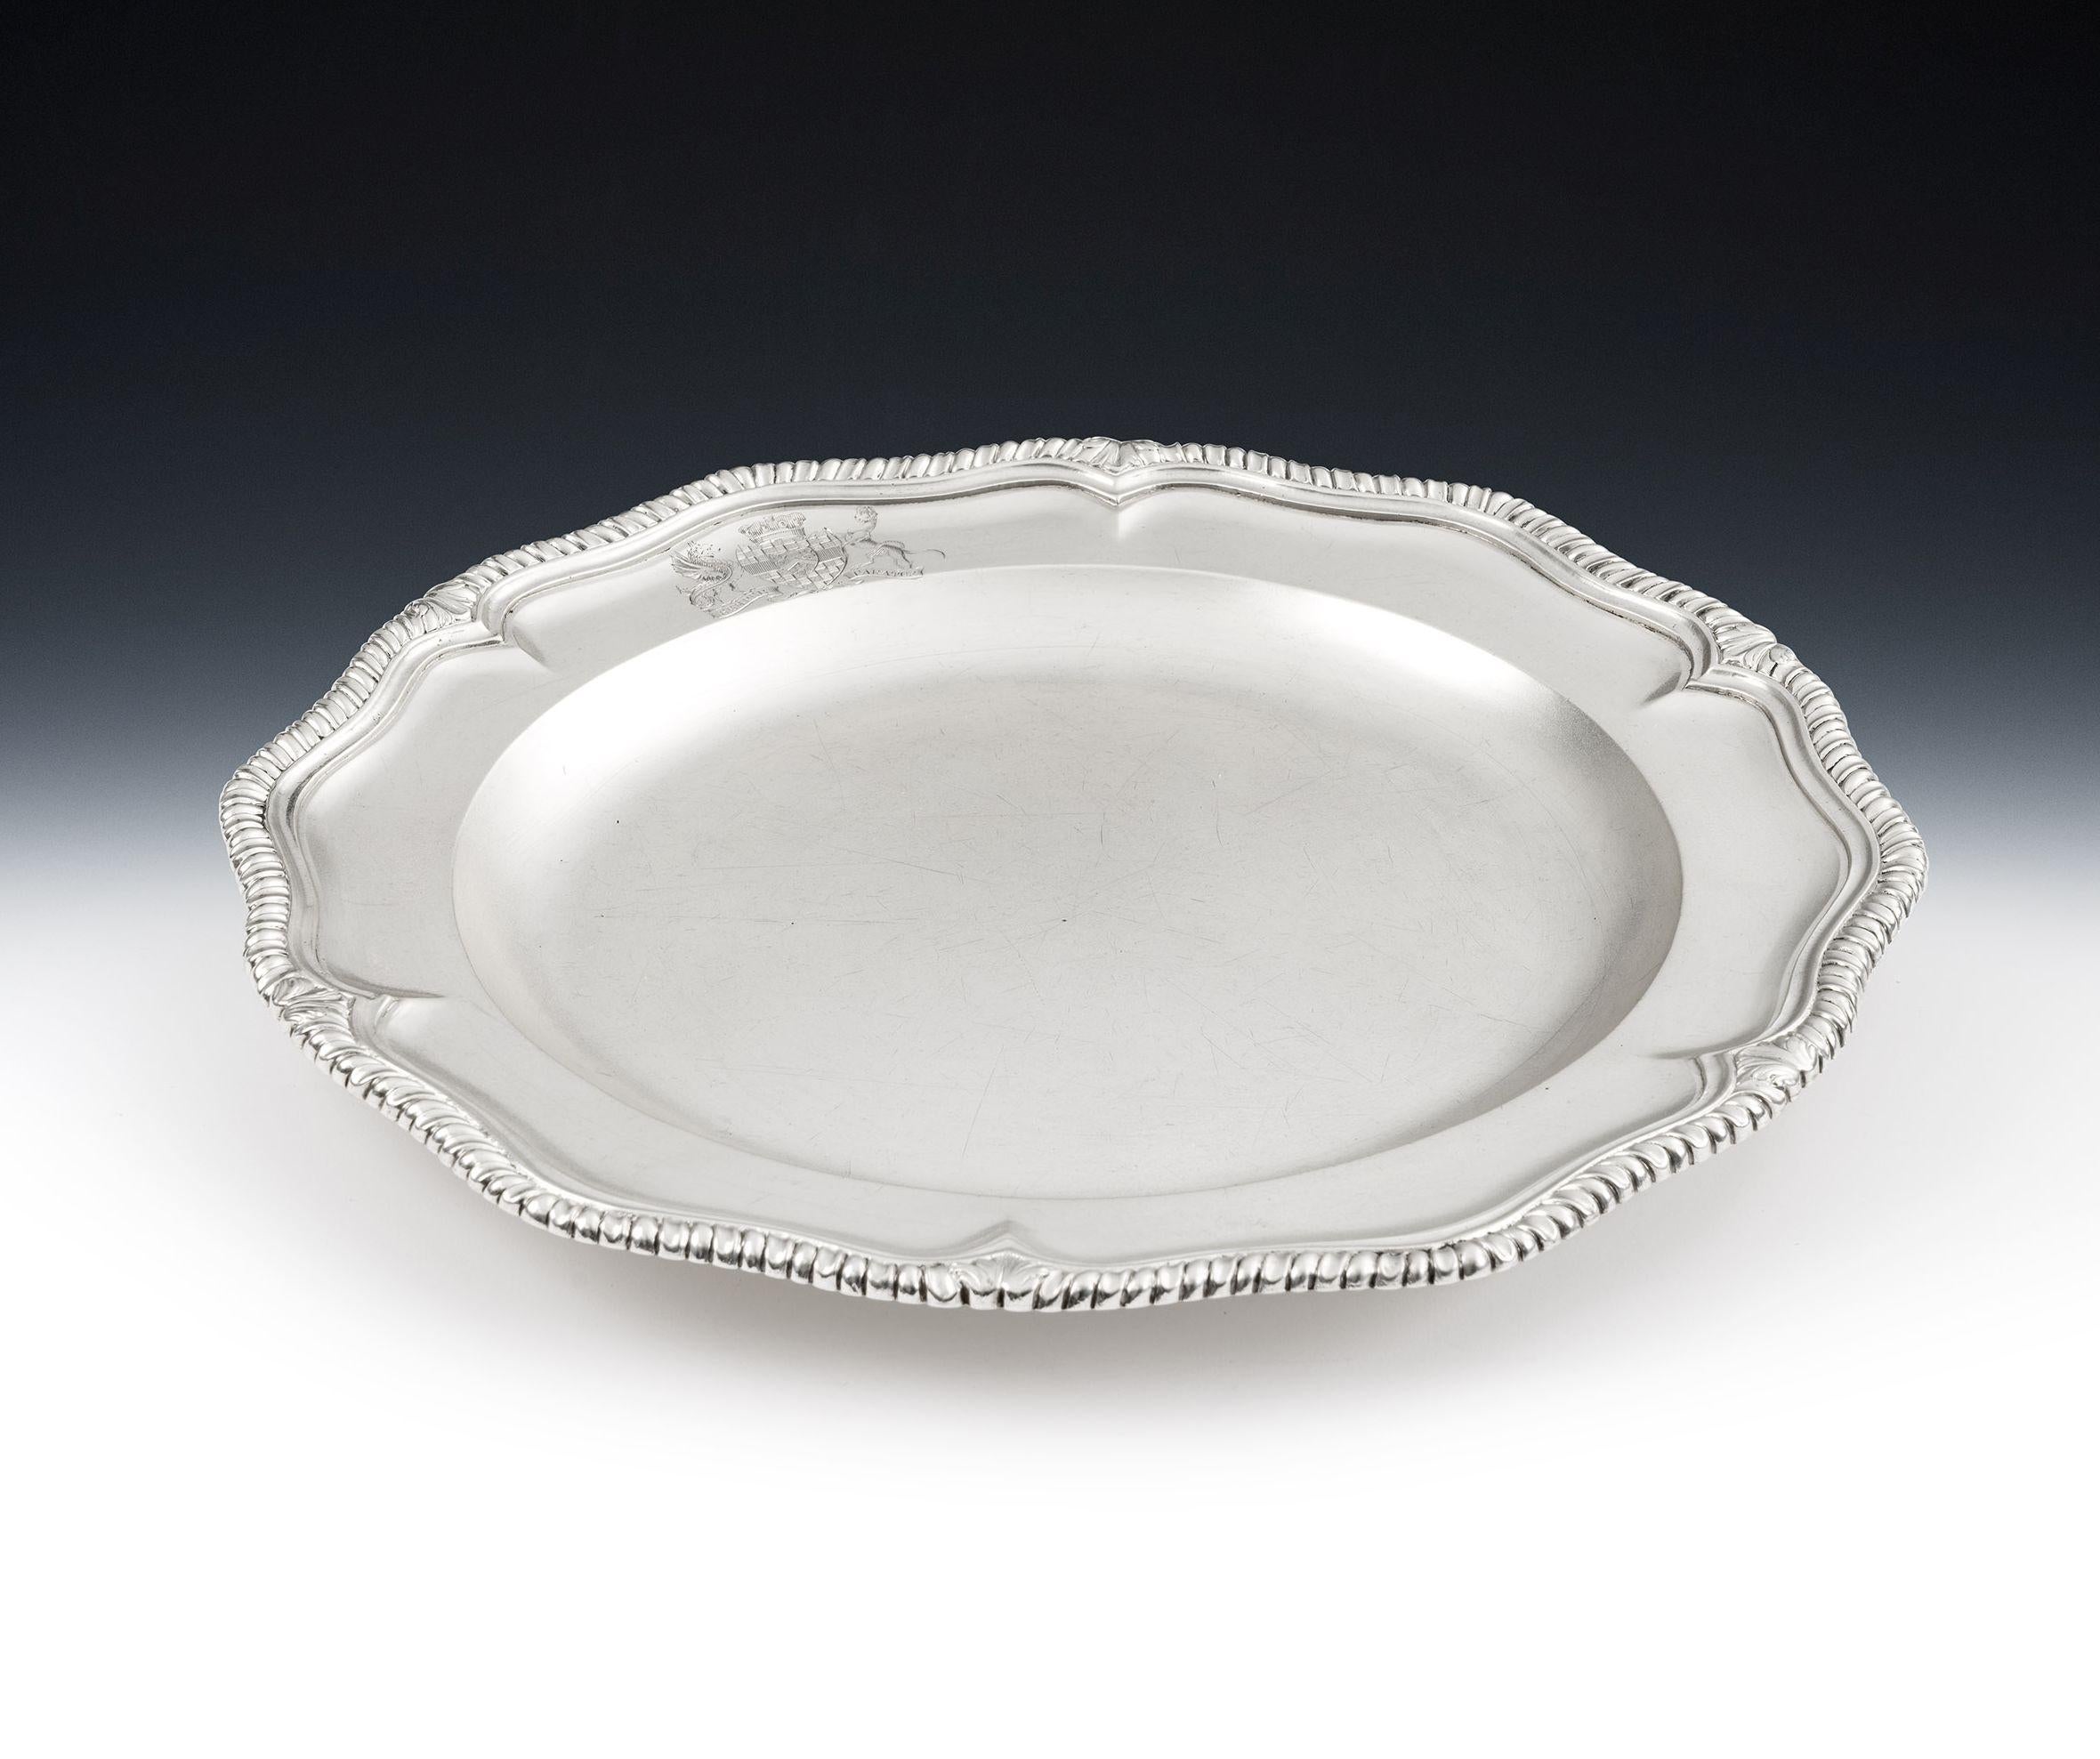 Très belle paire de plats de service George II fabriqués à Londres en 1745 par Edward Aldridge.

Les plats sont de forme circulaire, avec une bordure à godrons en escalier, entrecoupée de motifs feuillagés.  Le verso est gravé avec leur numéro dans